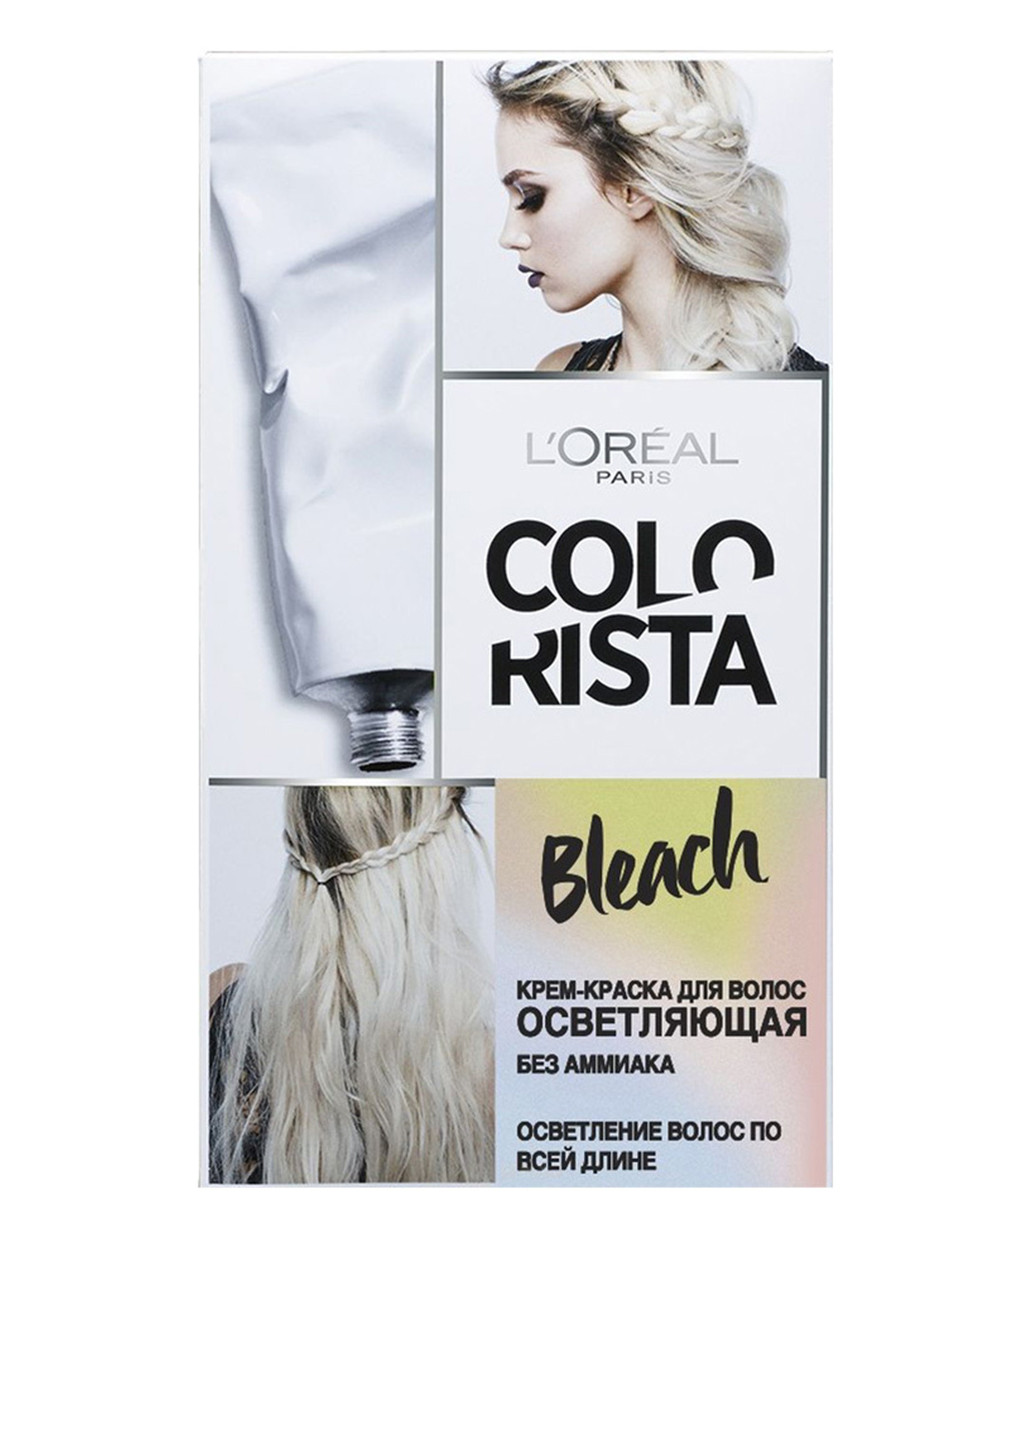 Крем-фарба для волосся осветляющая Colorista Effect Bleach 176 мл L'Oreal Paris (88091281)